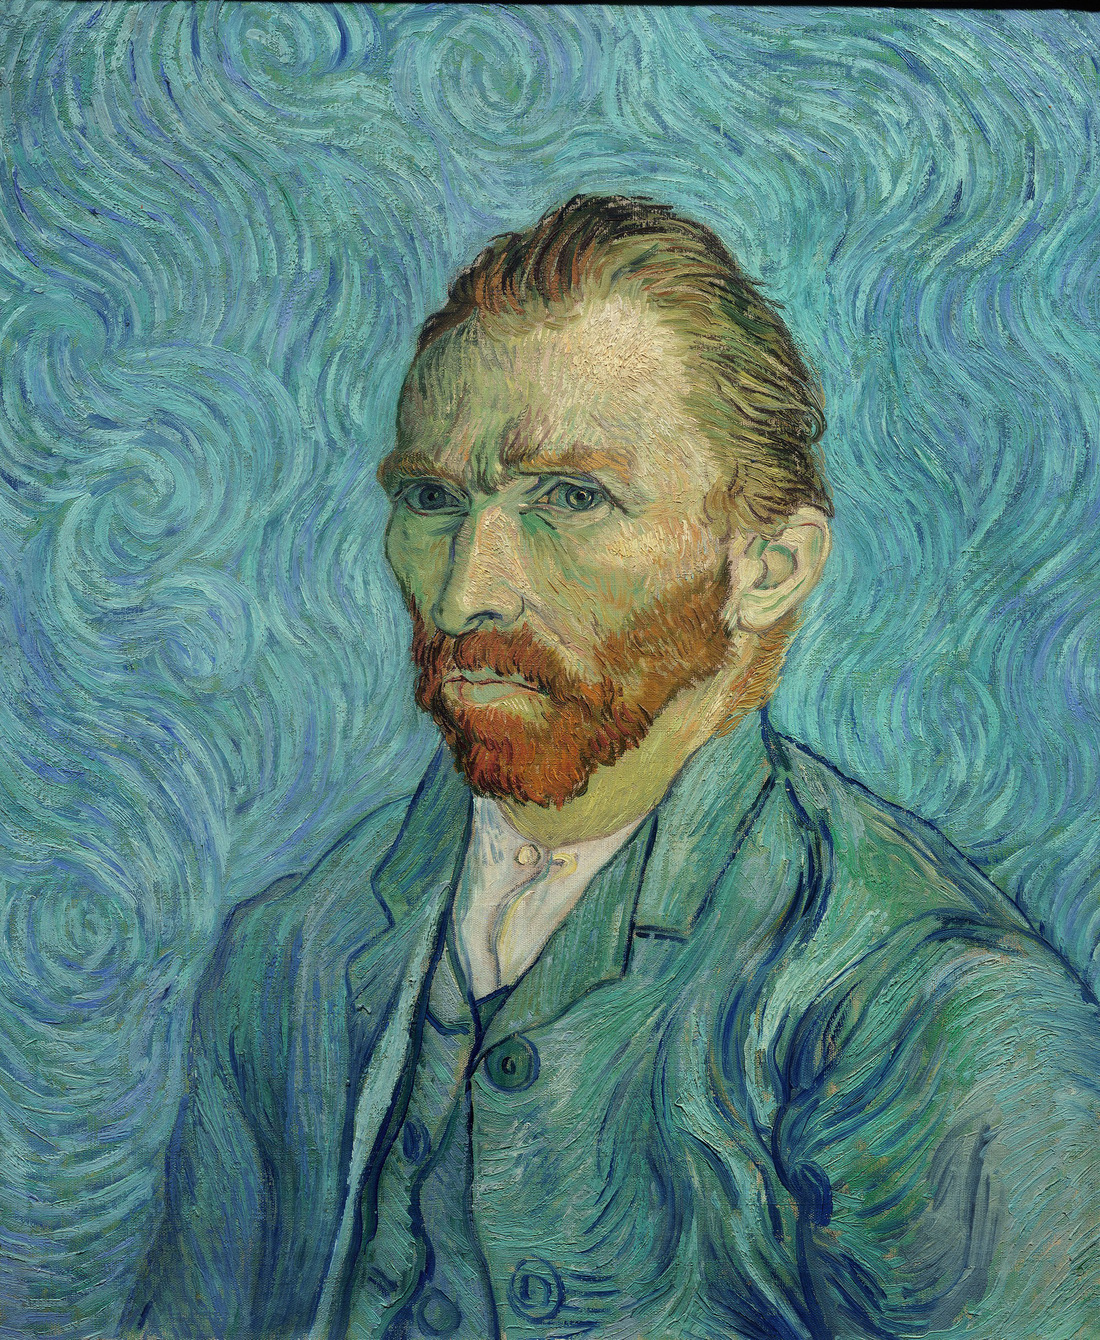 Lần đầu tiên xem tranh Van Gogh phiên bản số ở Việt Nam  - Ảnh 1.